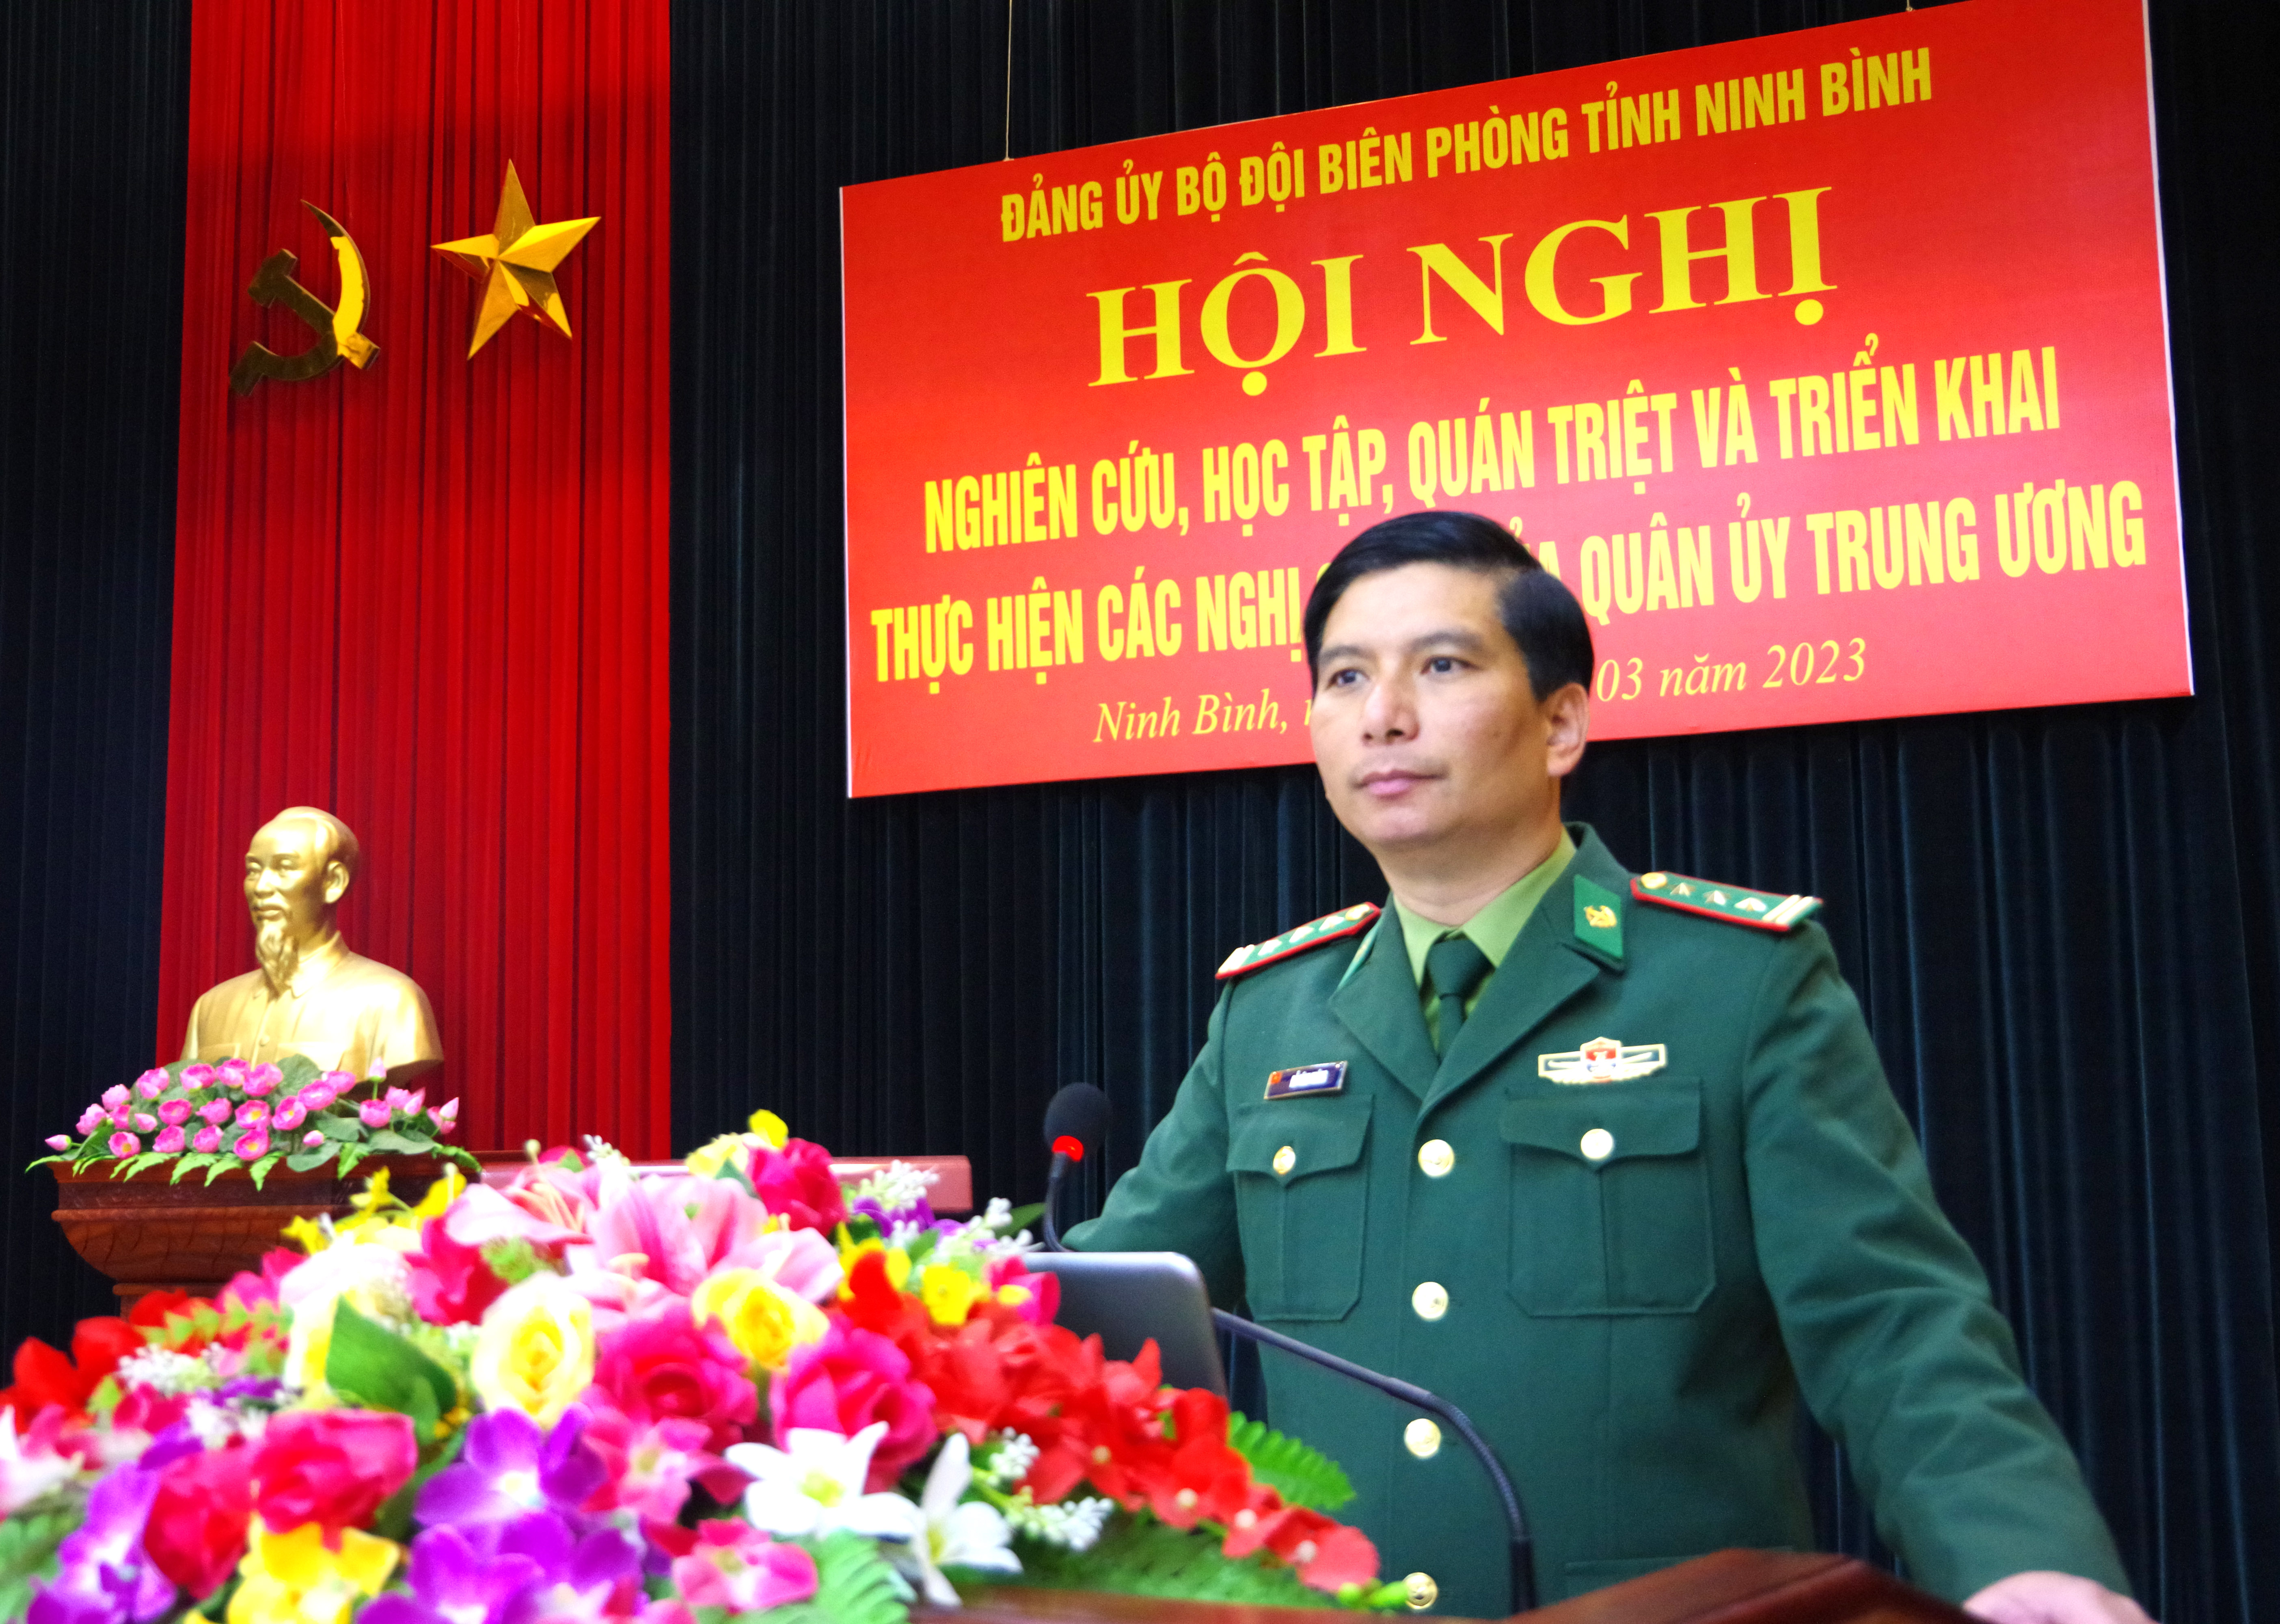 Đảng uỷ Bộ đội biên phòng tỉnh Ninh Bình tổ chức Học tập, quán triệt các nghị quyết của Quân uỷ Trung ương